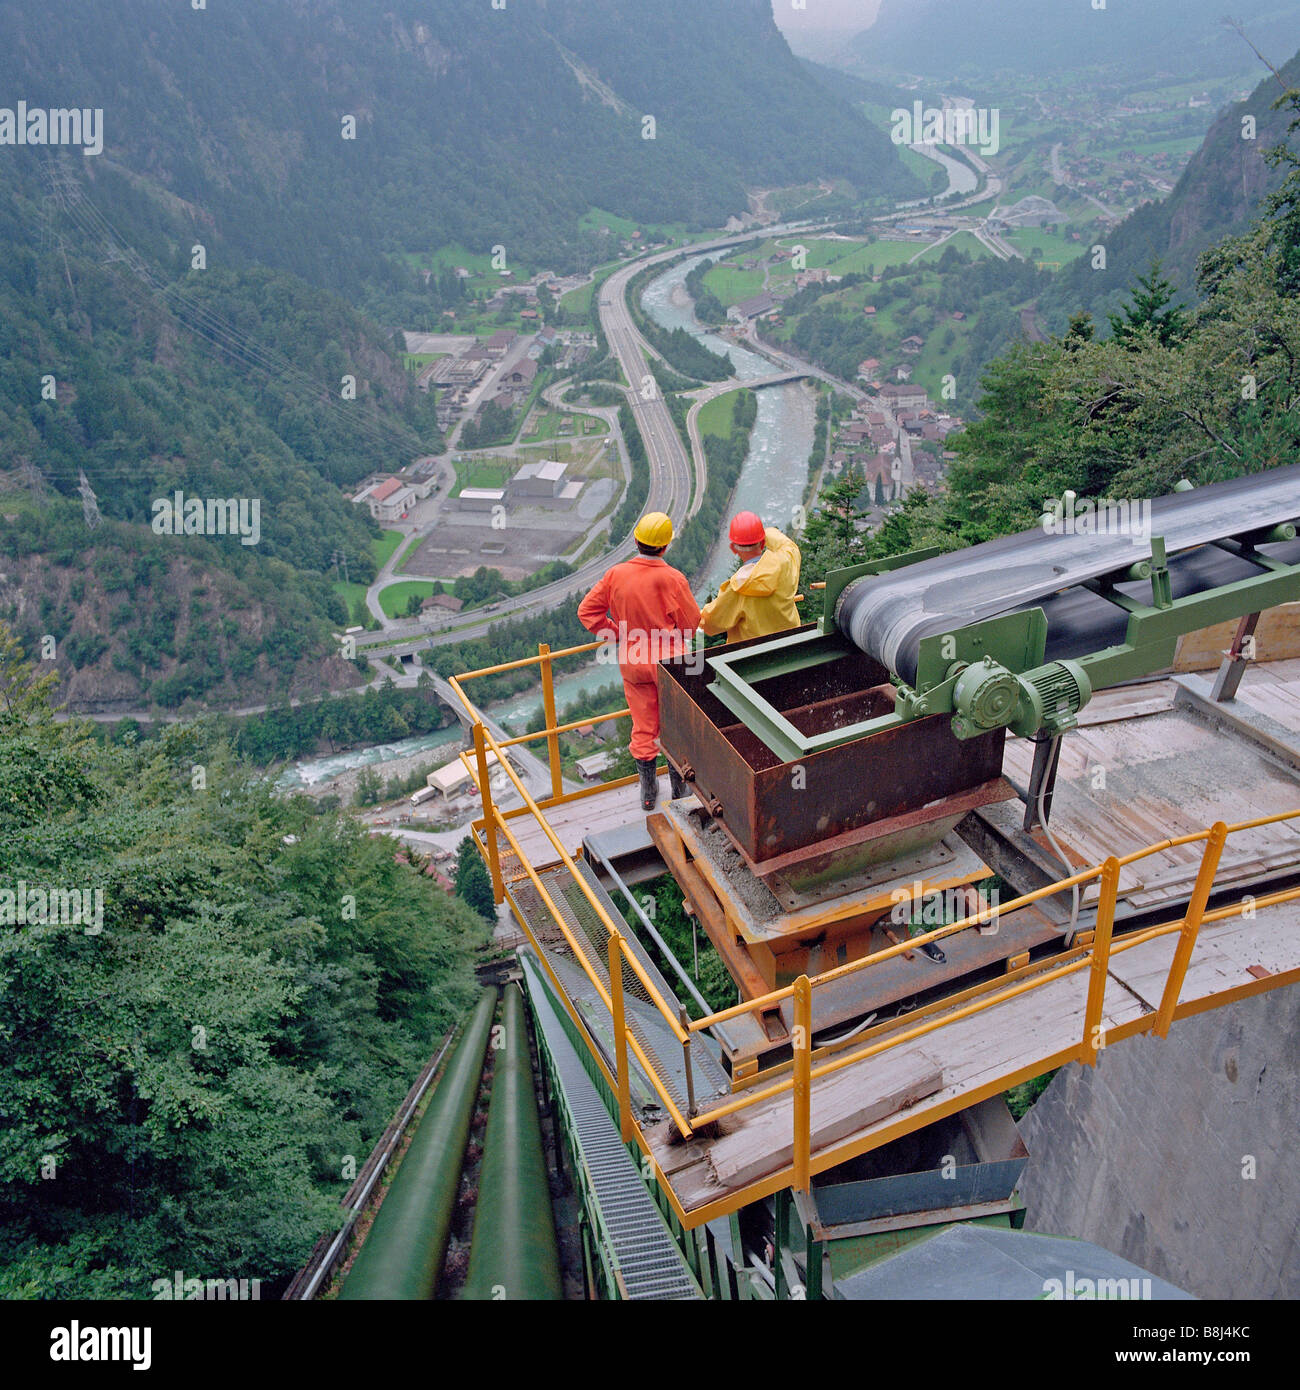 Des ingénieurs sur convoyeur gâter menant de l'hydroélectricité Suisse transport tunnel d'excavation pour l'immersion en niveau de la rivière. Banque D'Images